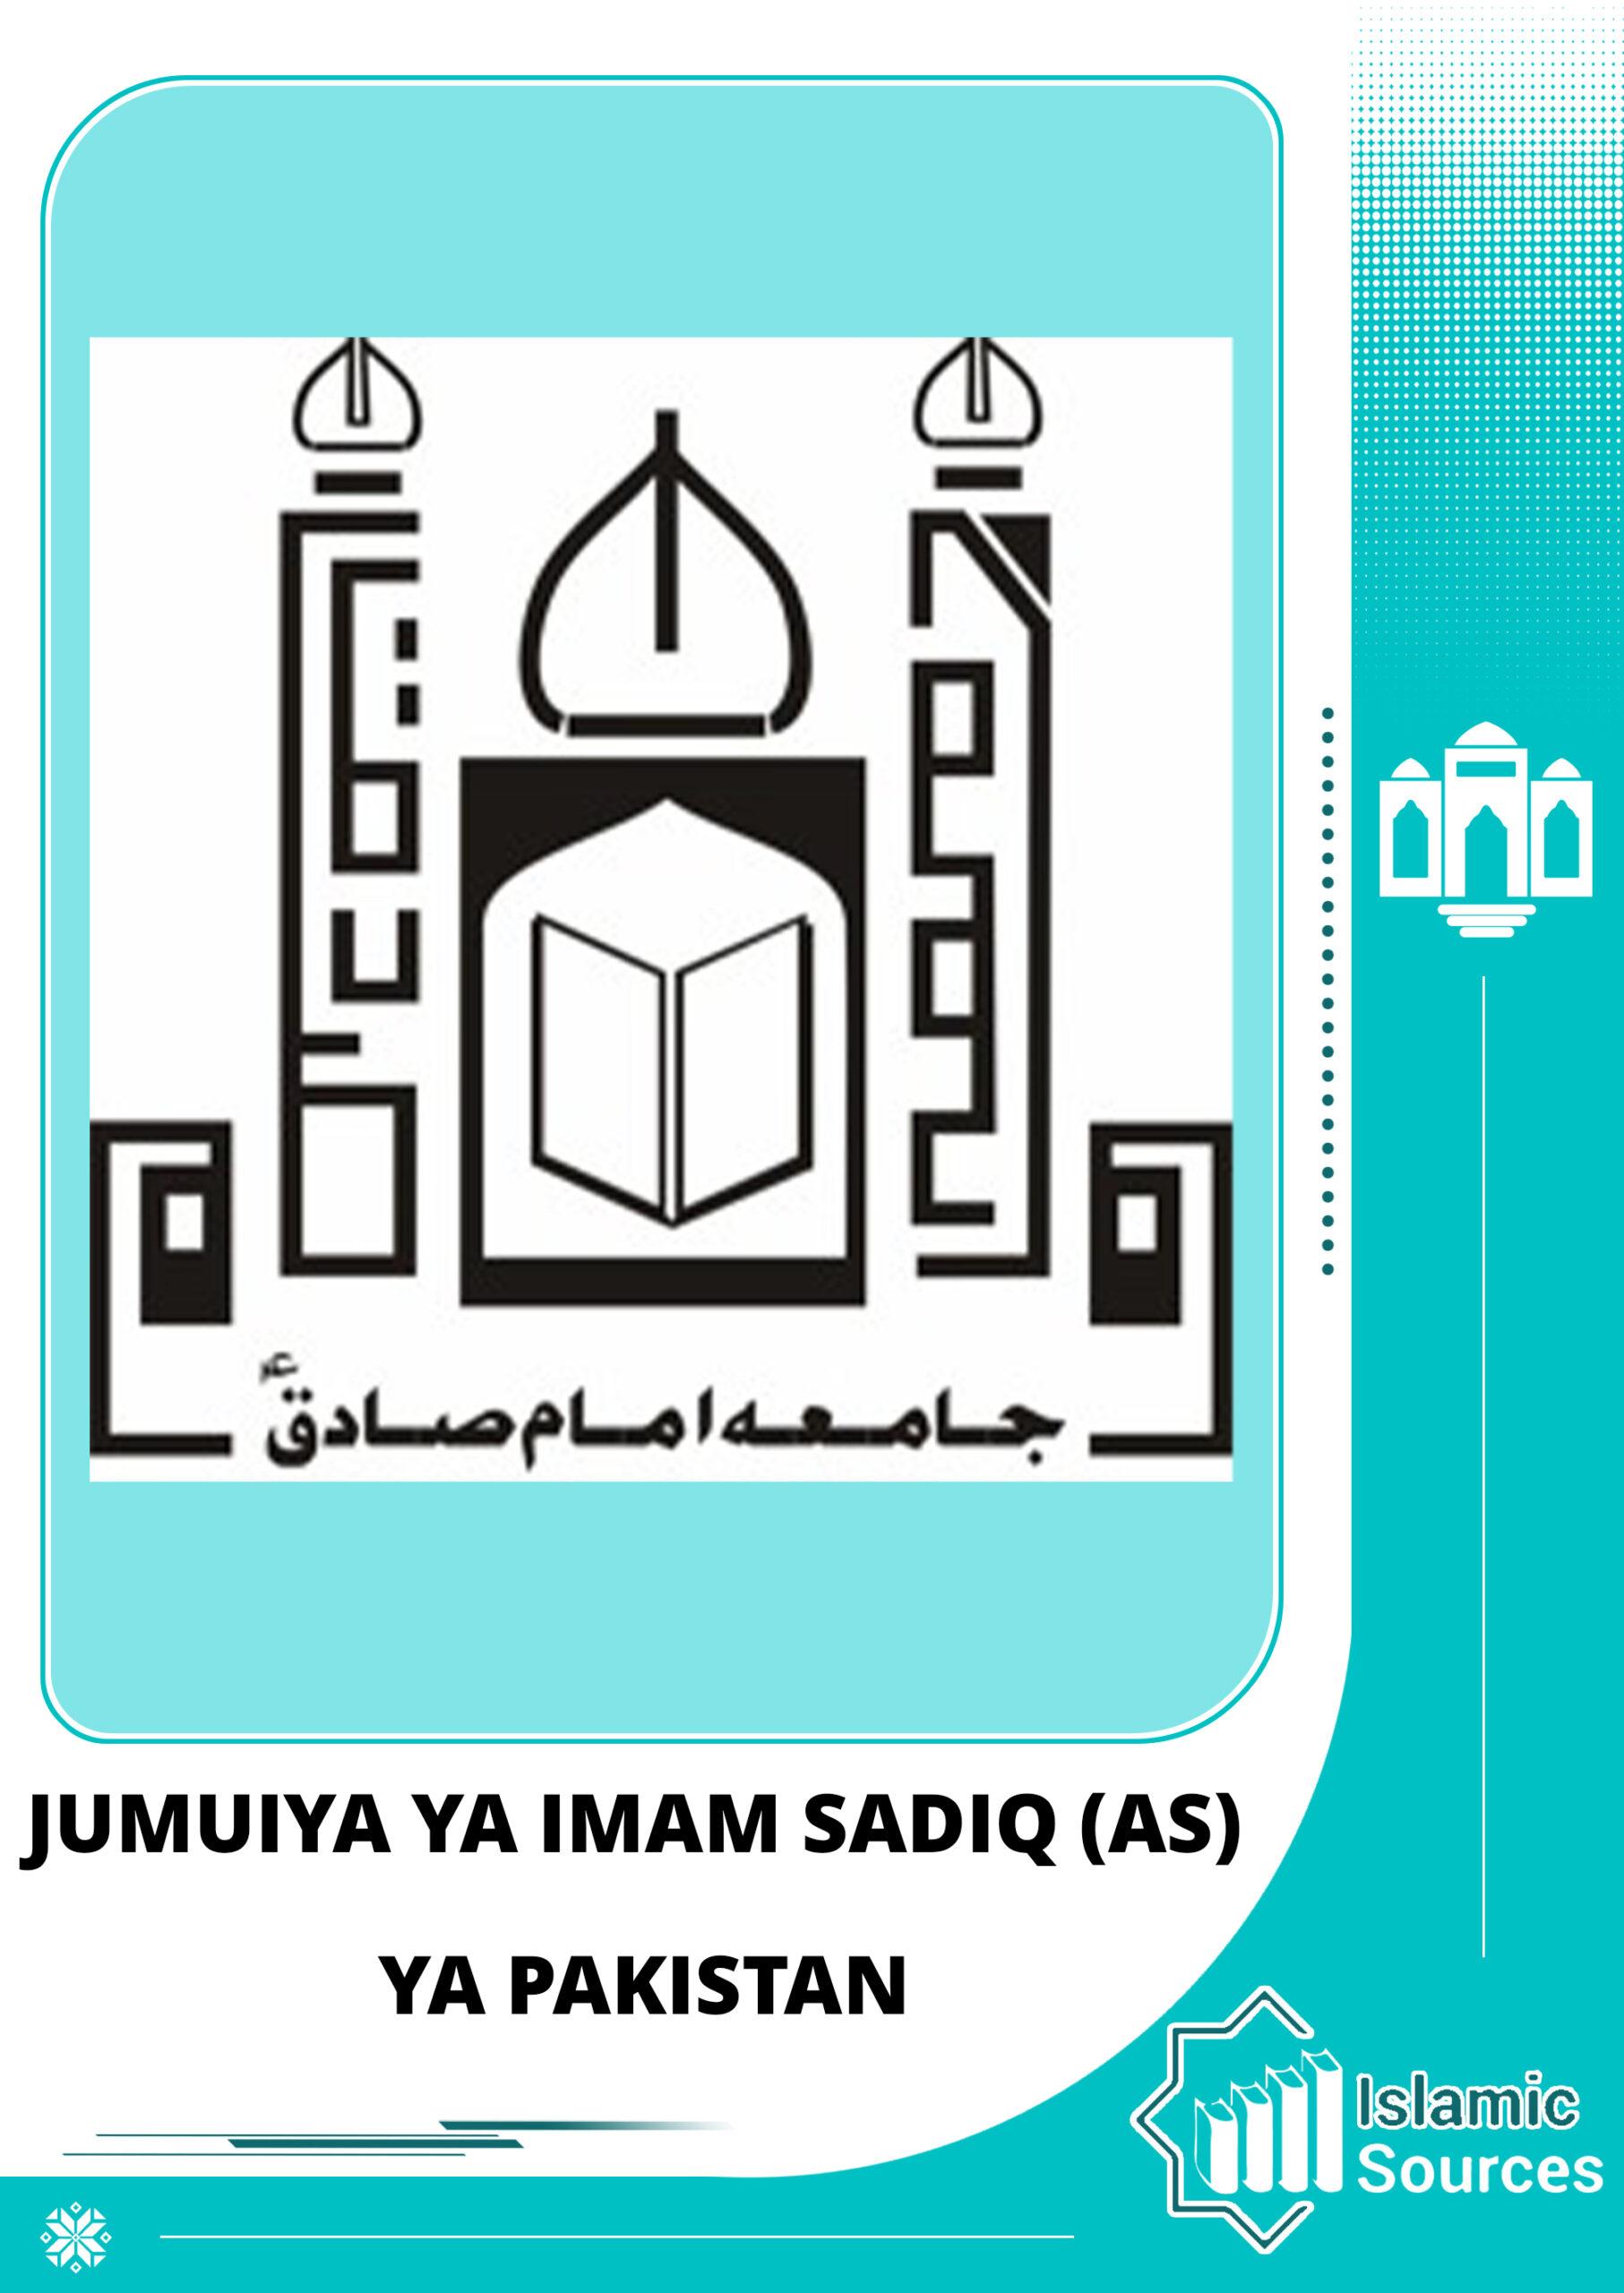 Jumuiya ya Imam Sadiq (AS) ya Pakistan